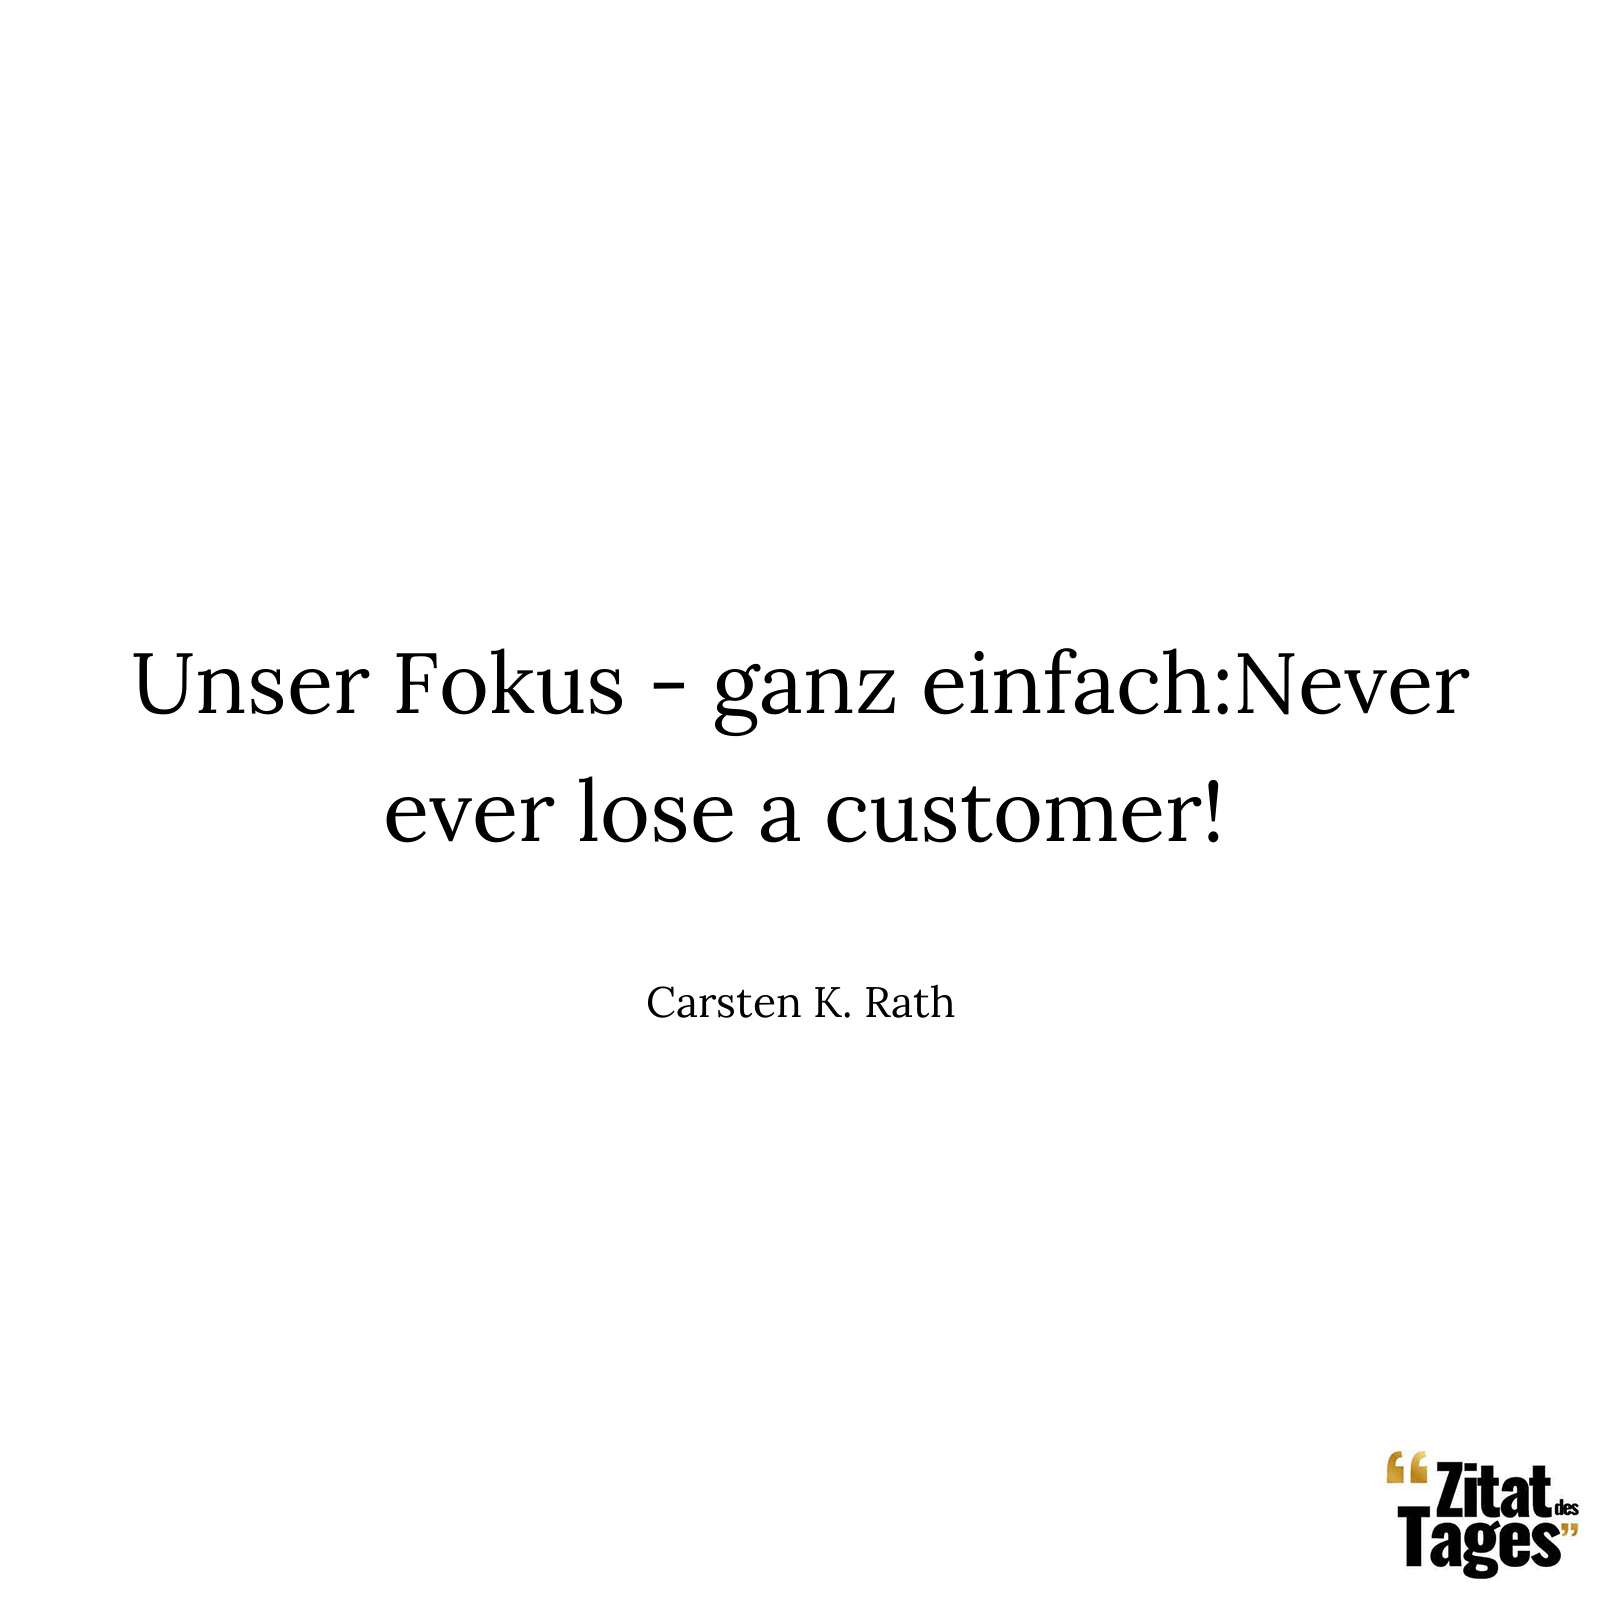 Unser Fokus - ganz einfach:Never ever lose a customer! - Carsten K. Rath